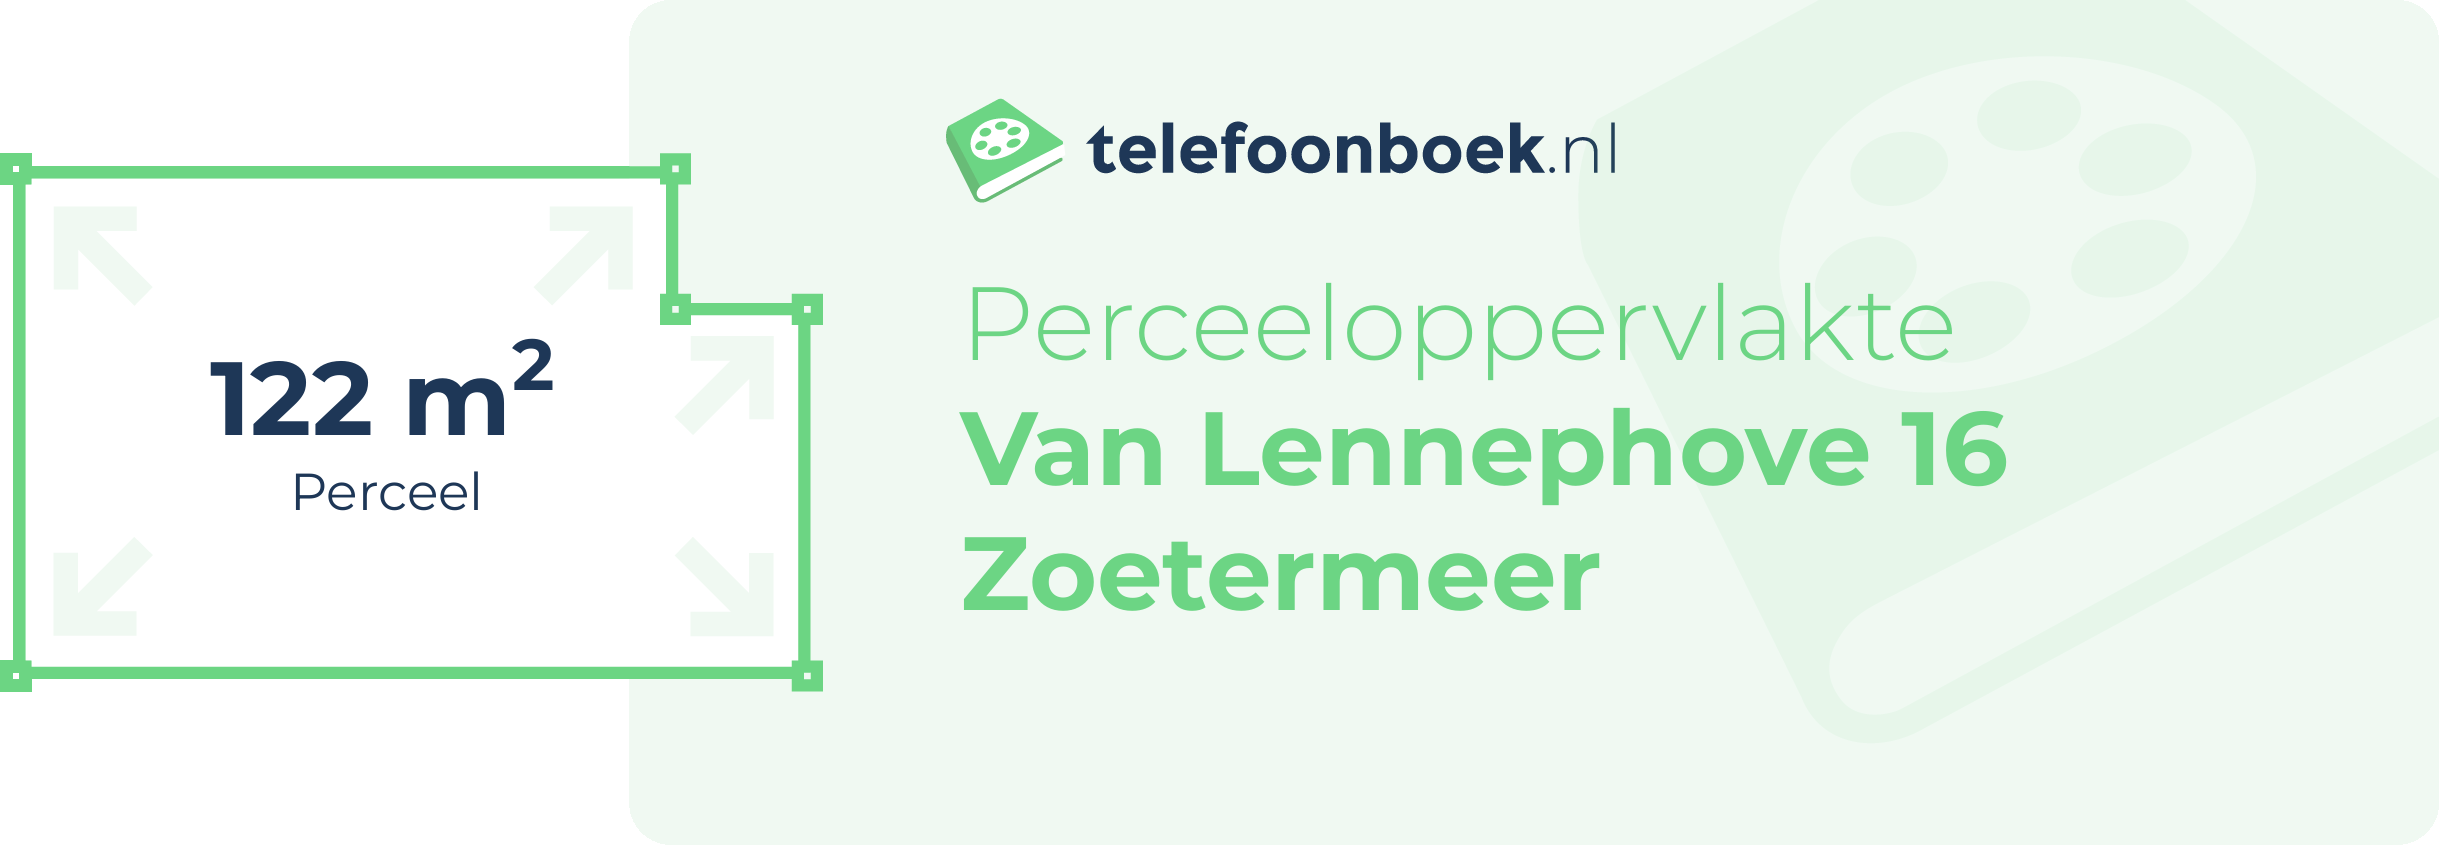 Perceeloppervlakte Van Lennephove 16 Zoetermeer